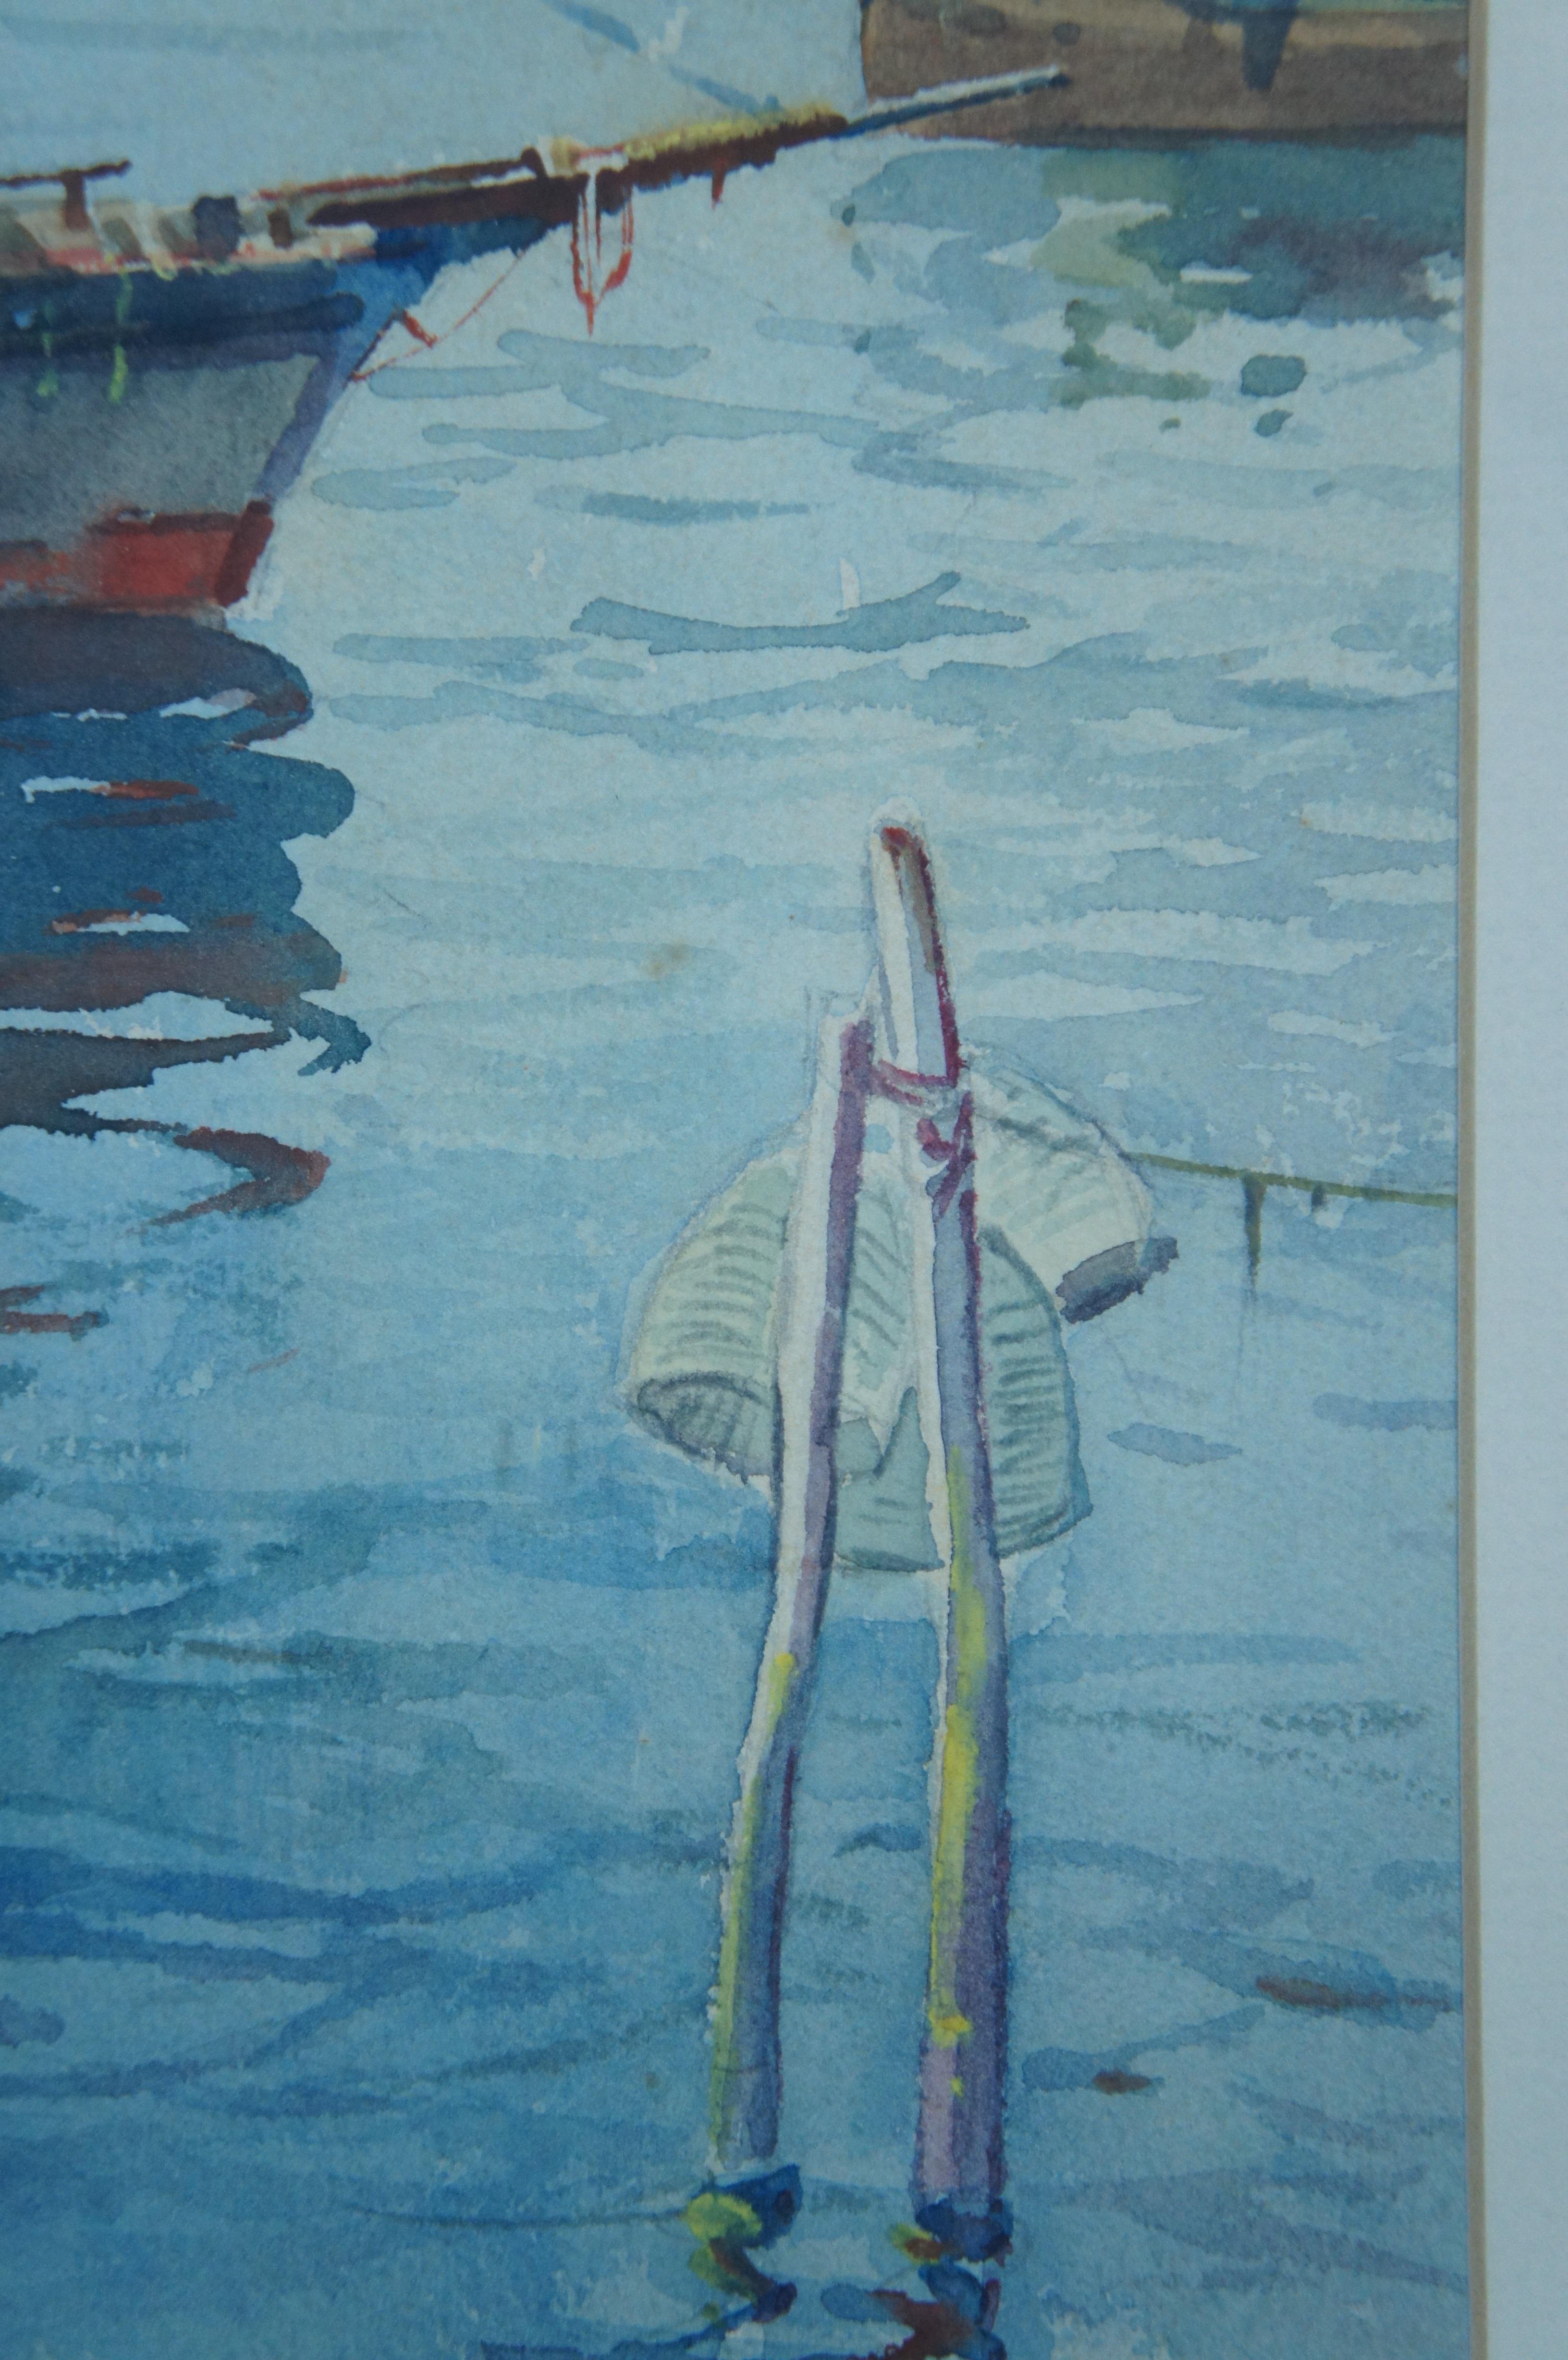 Antique T. Baldasar Nautical Maritime Sail Boat Harbor Watercolor Painting 22